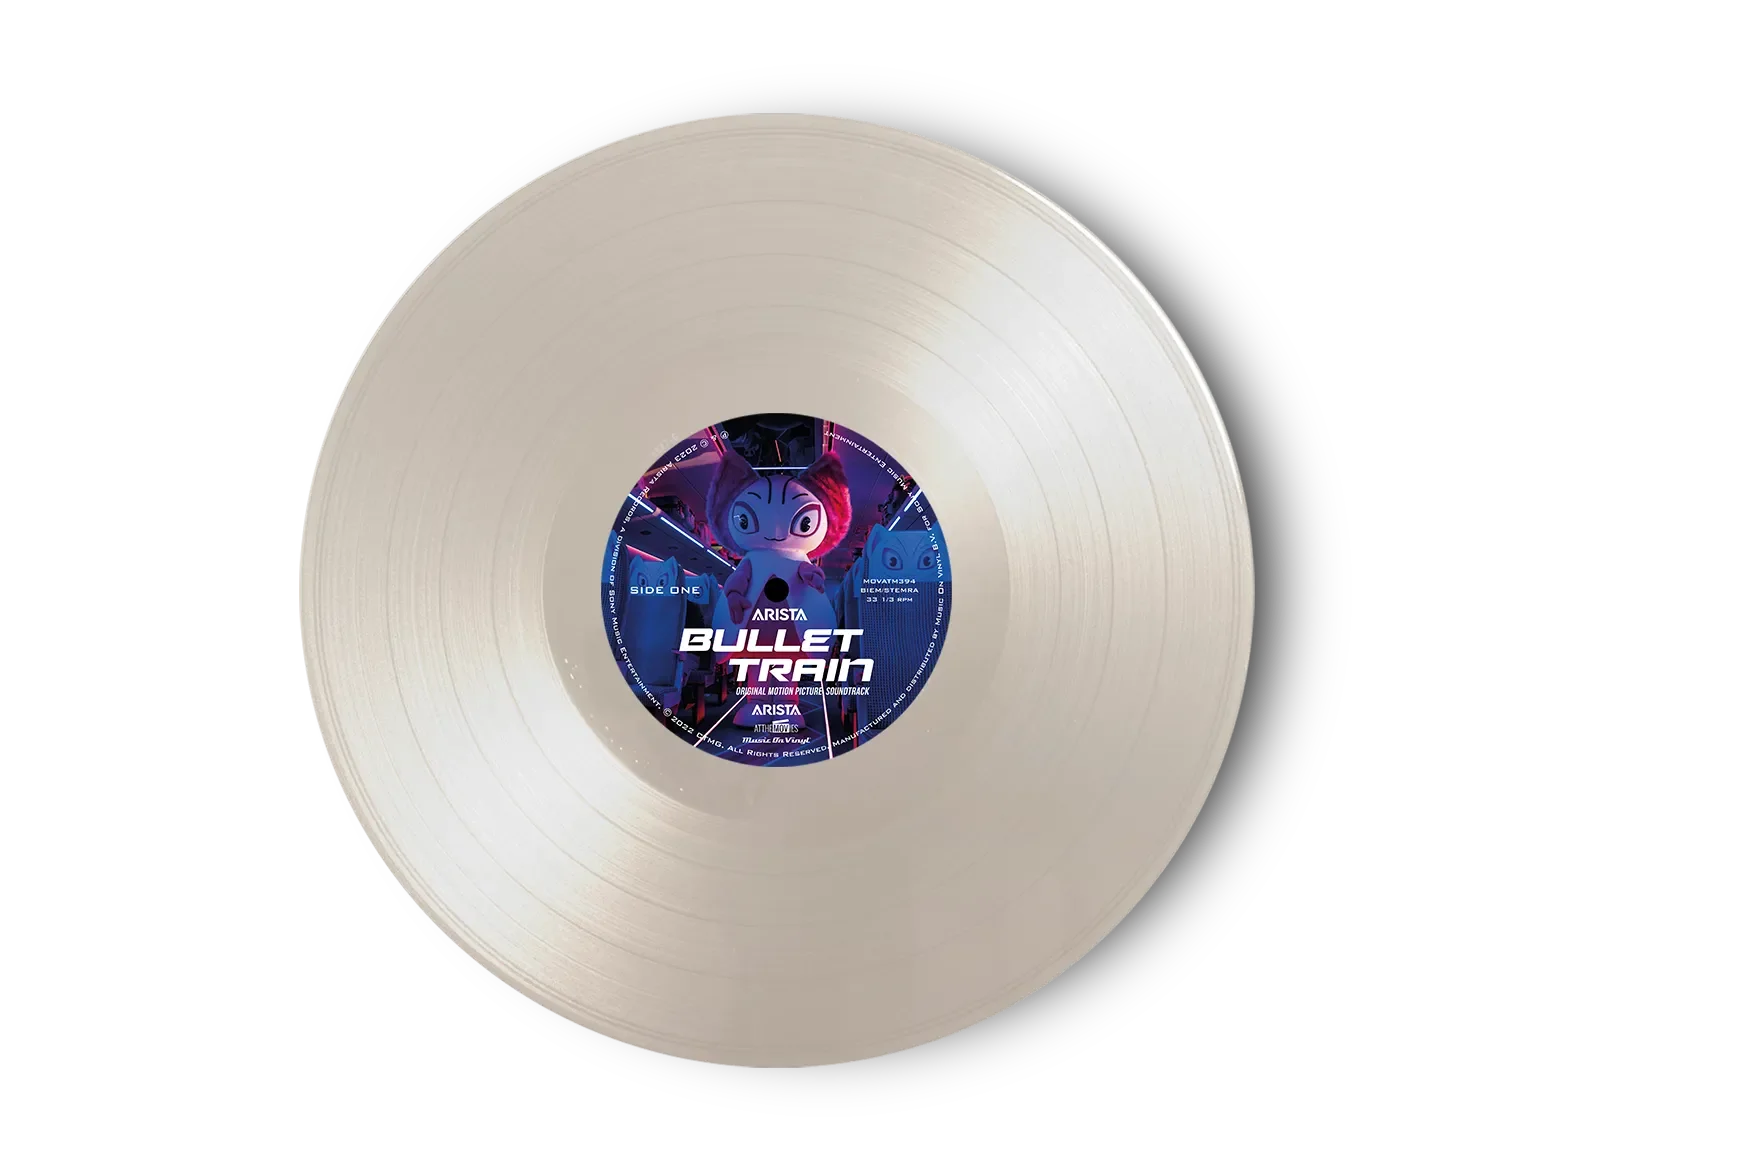 VARIOUS - Bullet Train (Original Soundtrack) - LP - 180g 'White Death' Edition Coloured Vinyl [JUN 7]